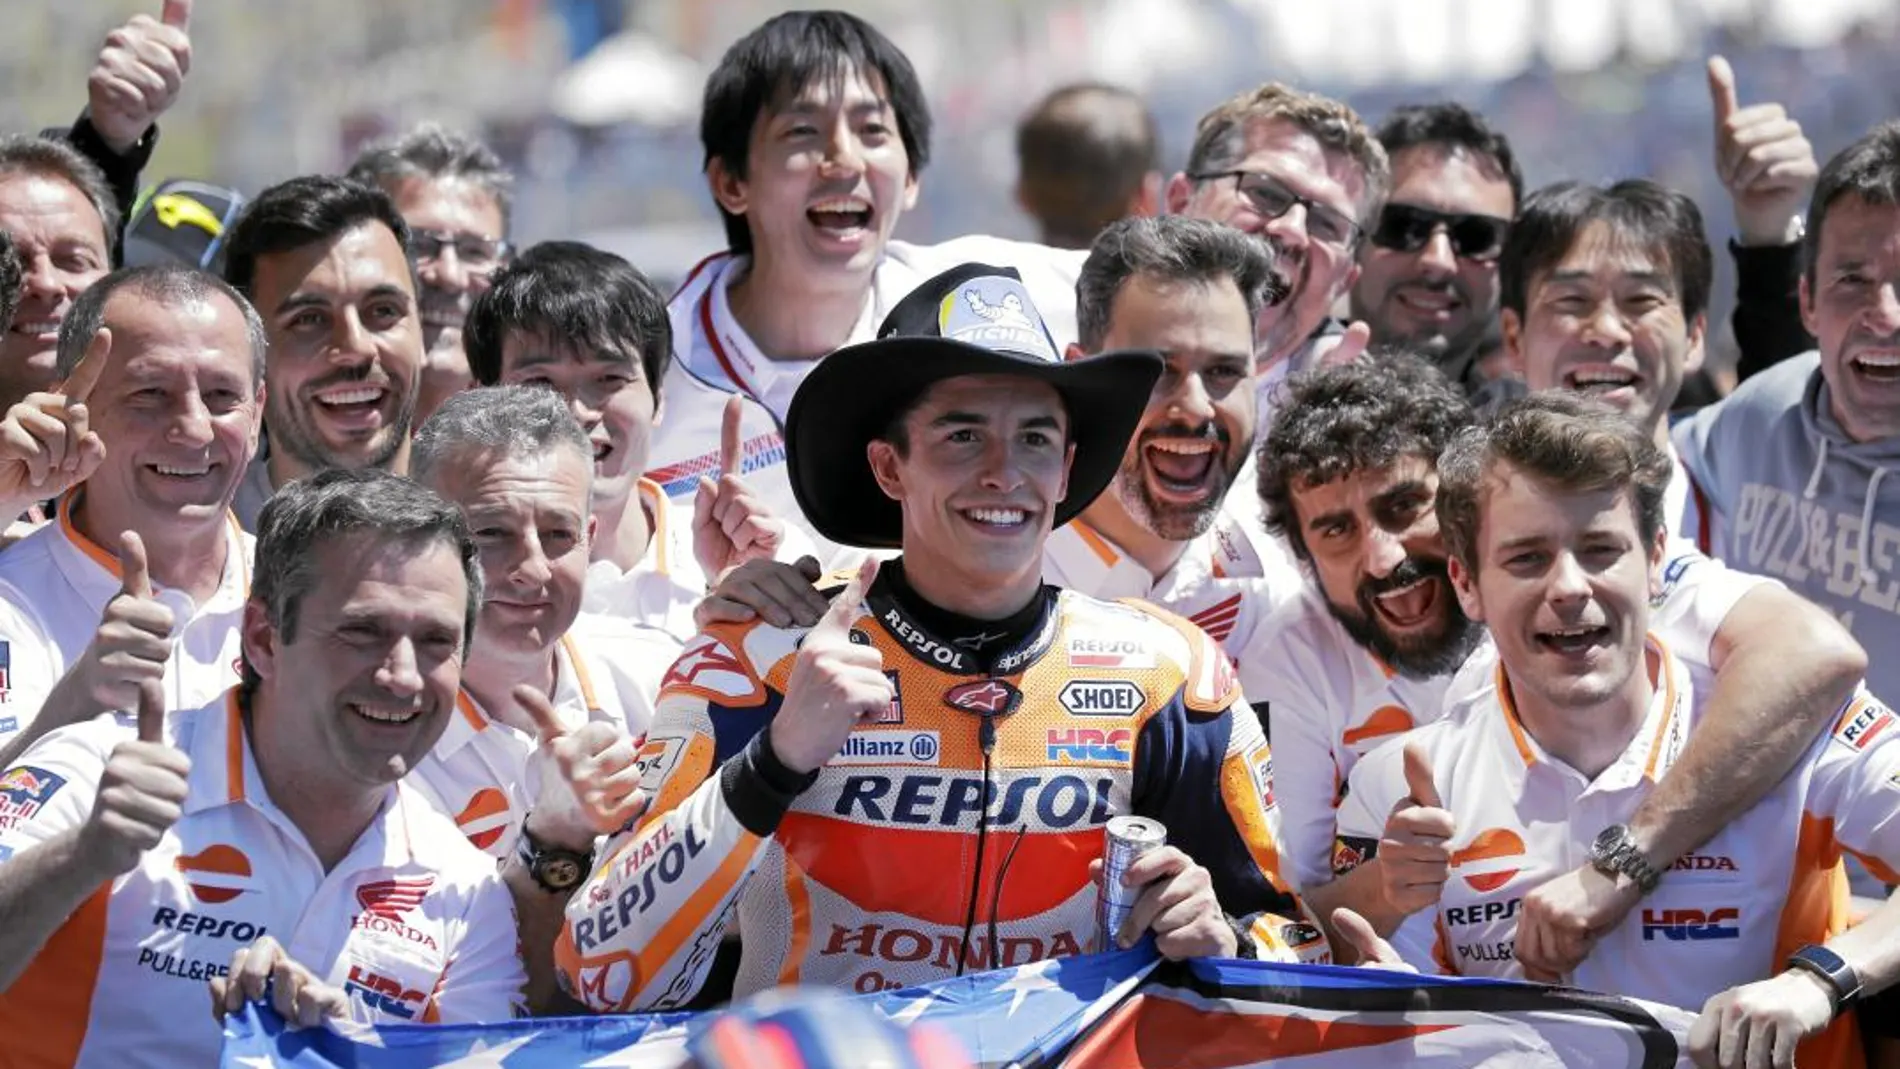 Marc celebra, junto a los miembros de su equipo y con un gorro vaquero, su victoria en el GP de las Américas